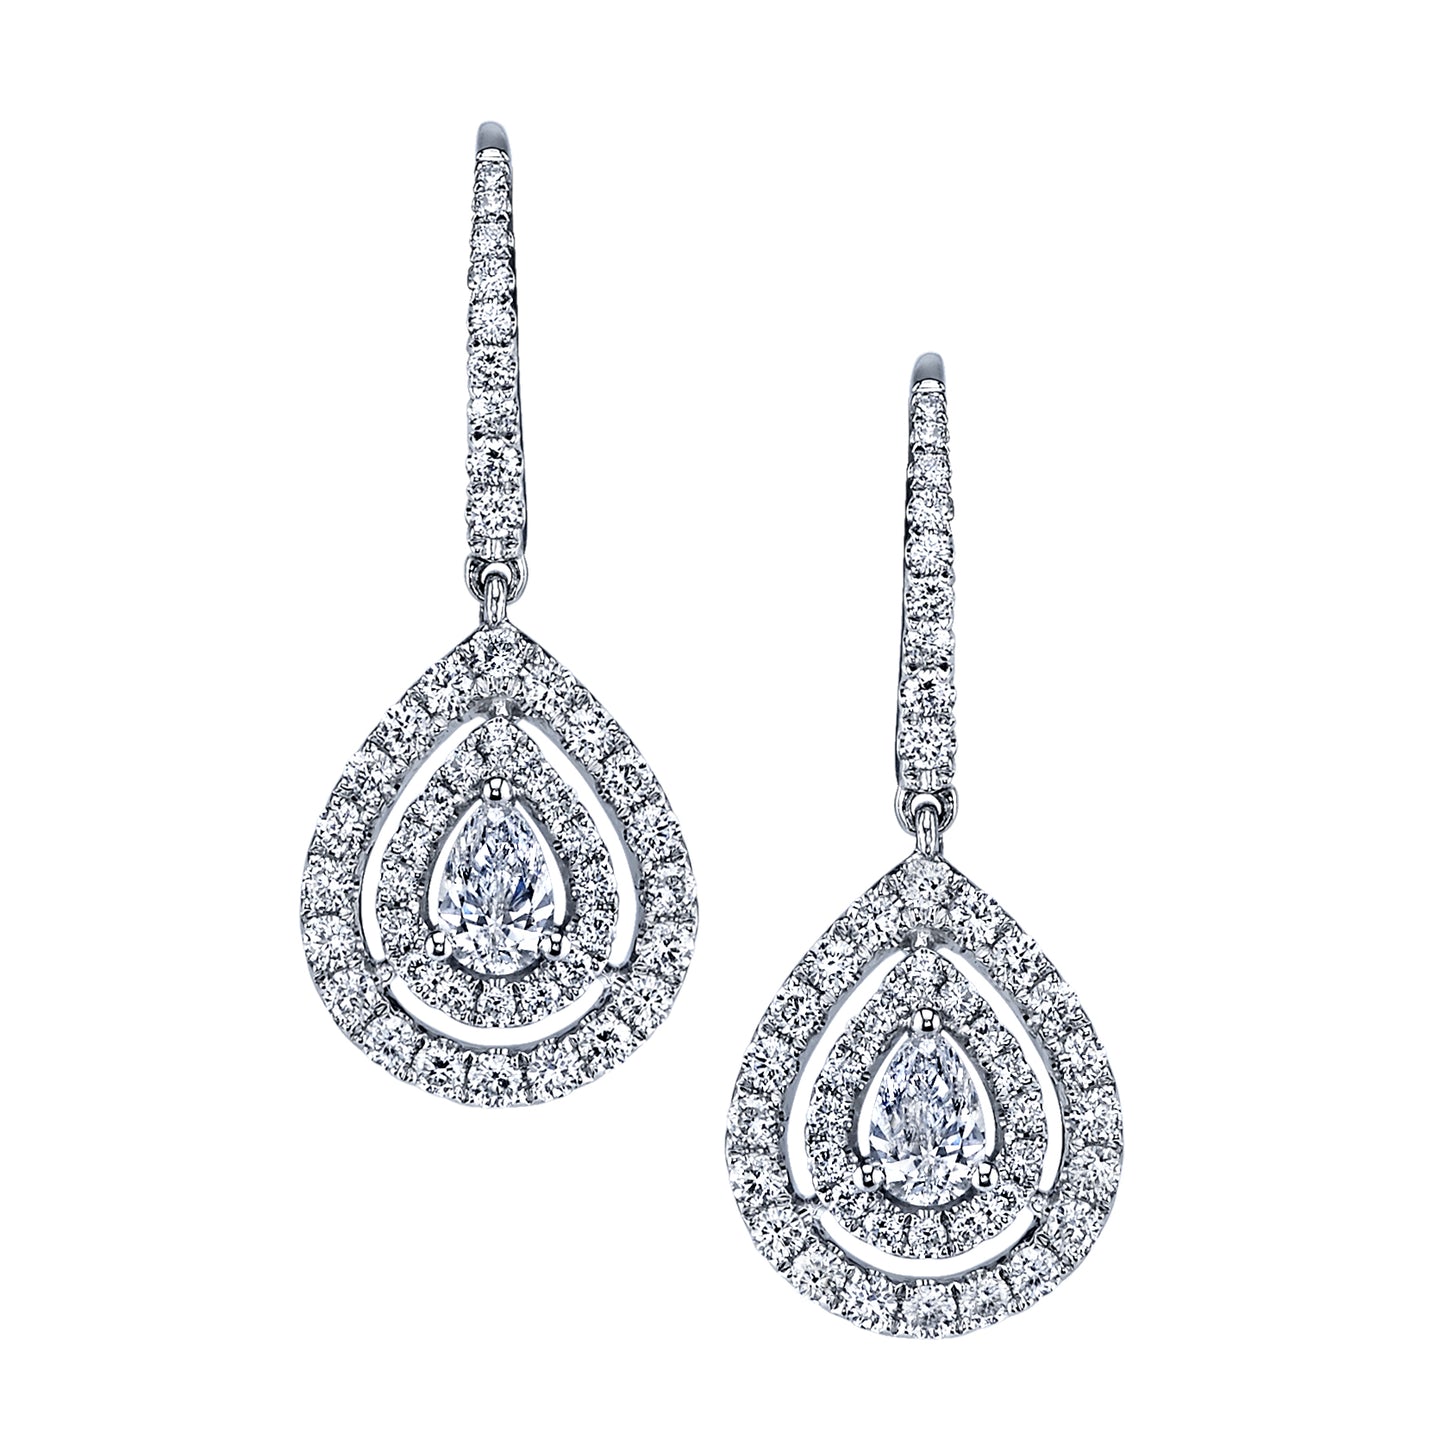 Dangling Double Halo Pear Shape Diamond Earrings